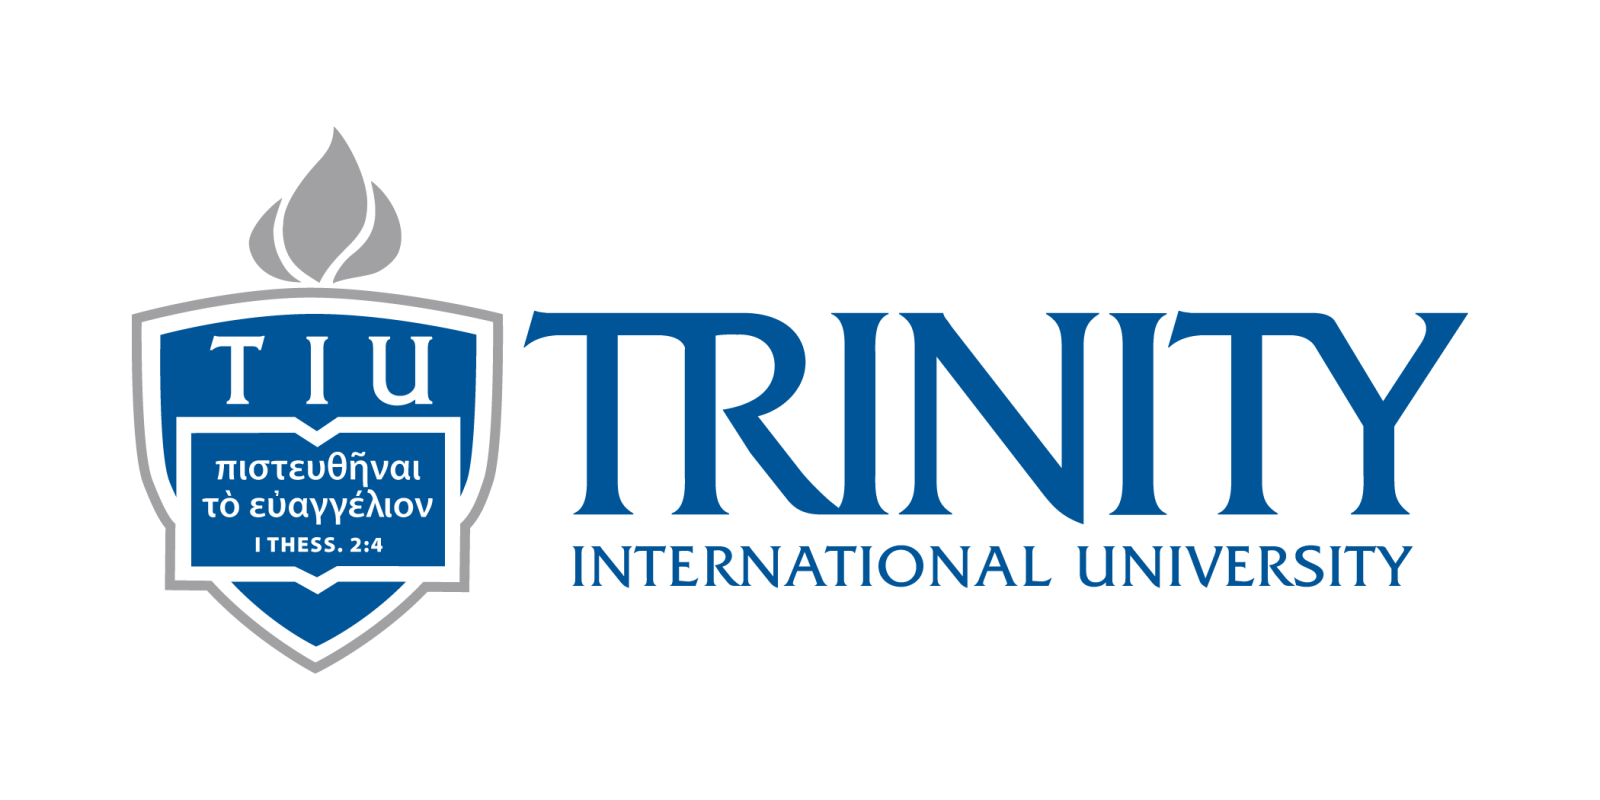 Trinity International University Logo